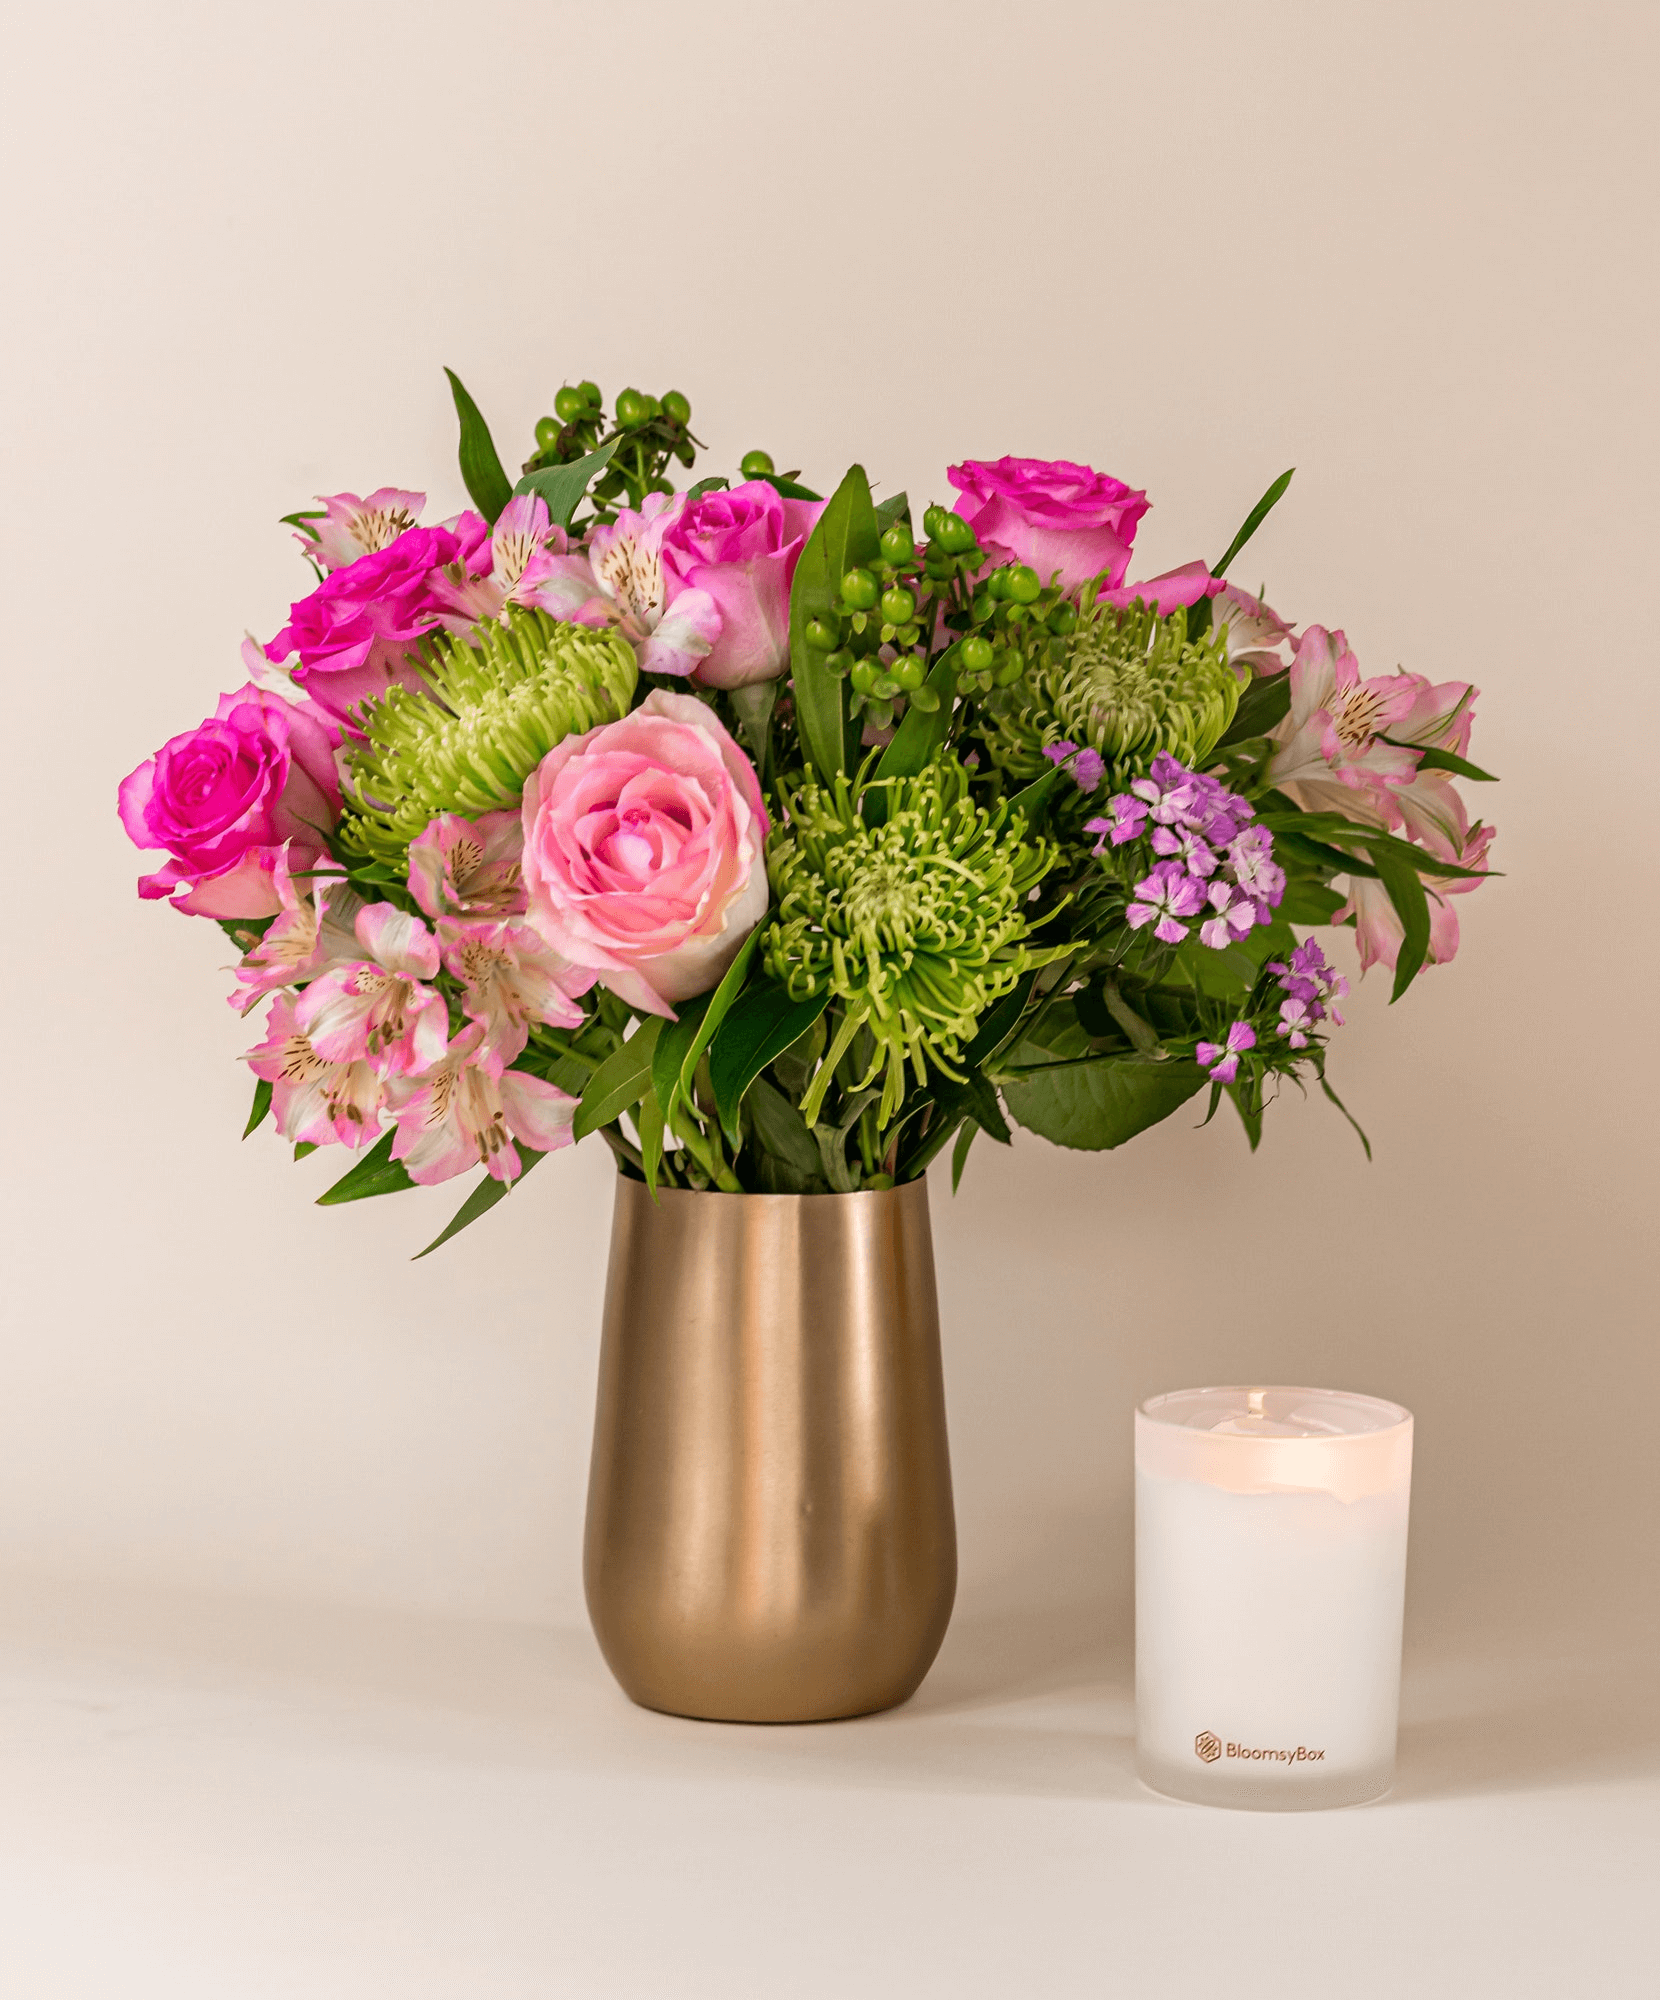 bloomsy box roses in vase